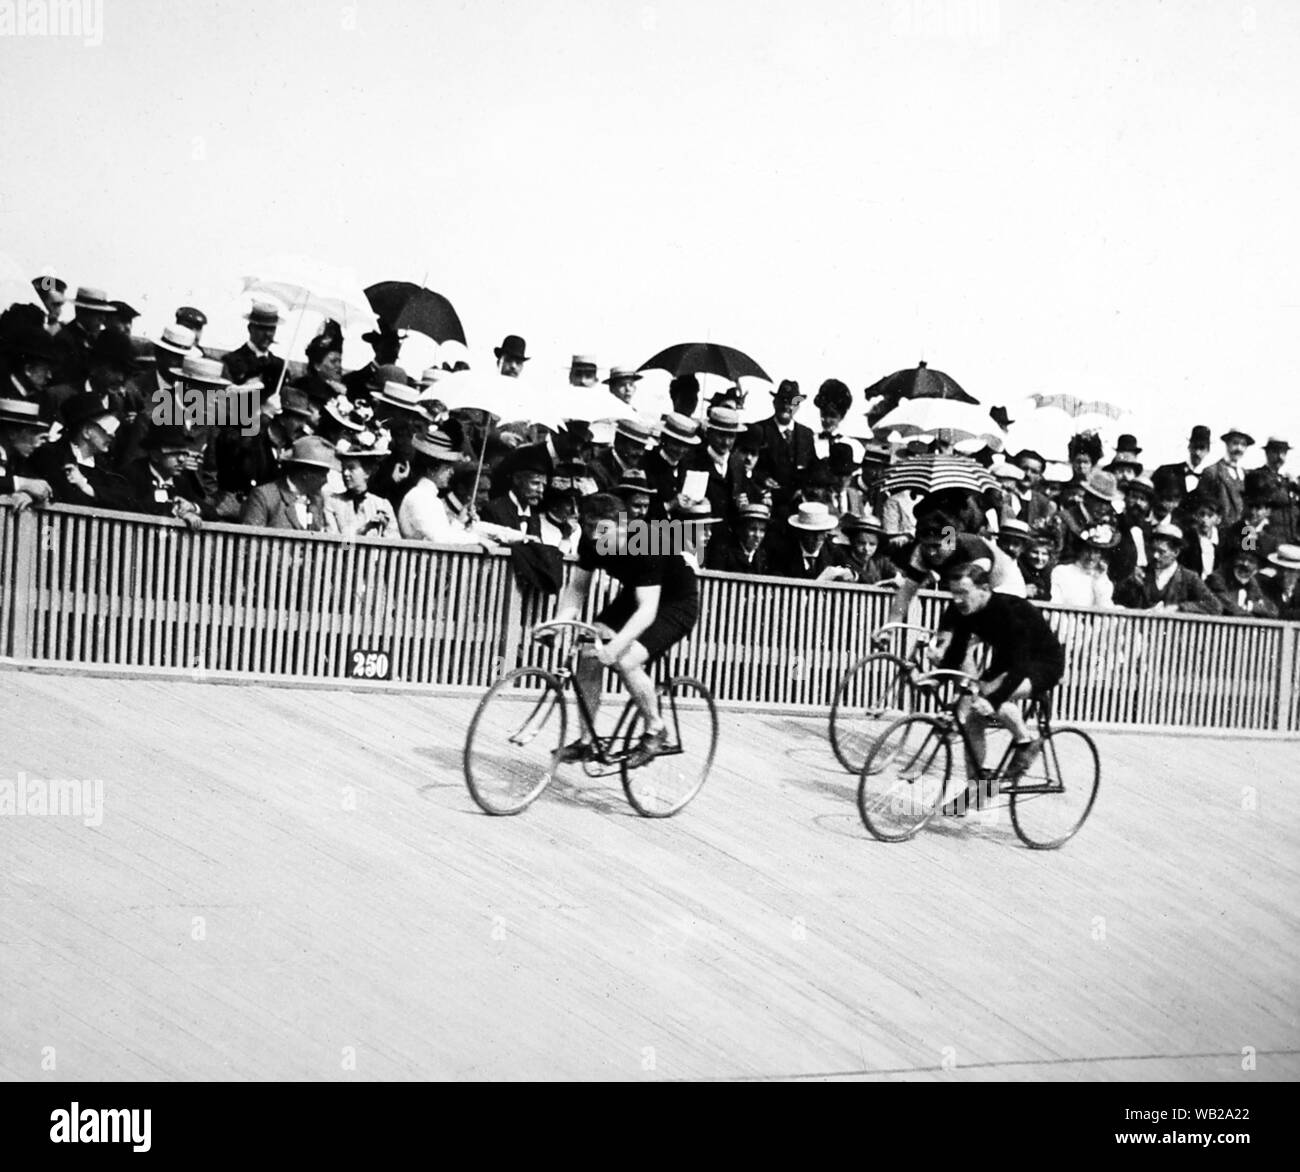 Gara ciclistica al velodromo, agli inizi del novecento Foto Stock